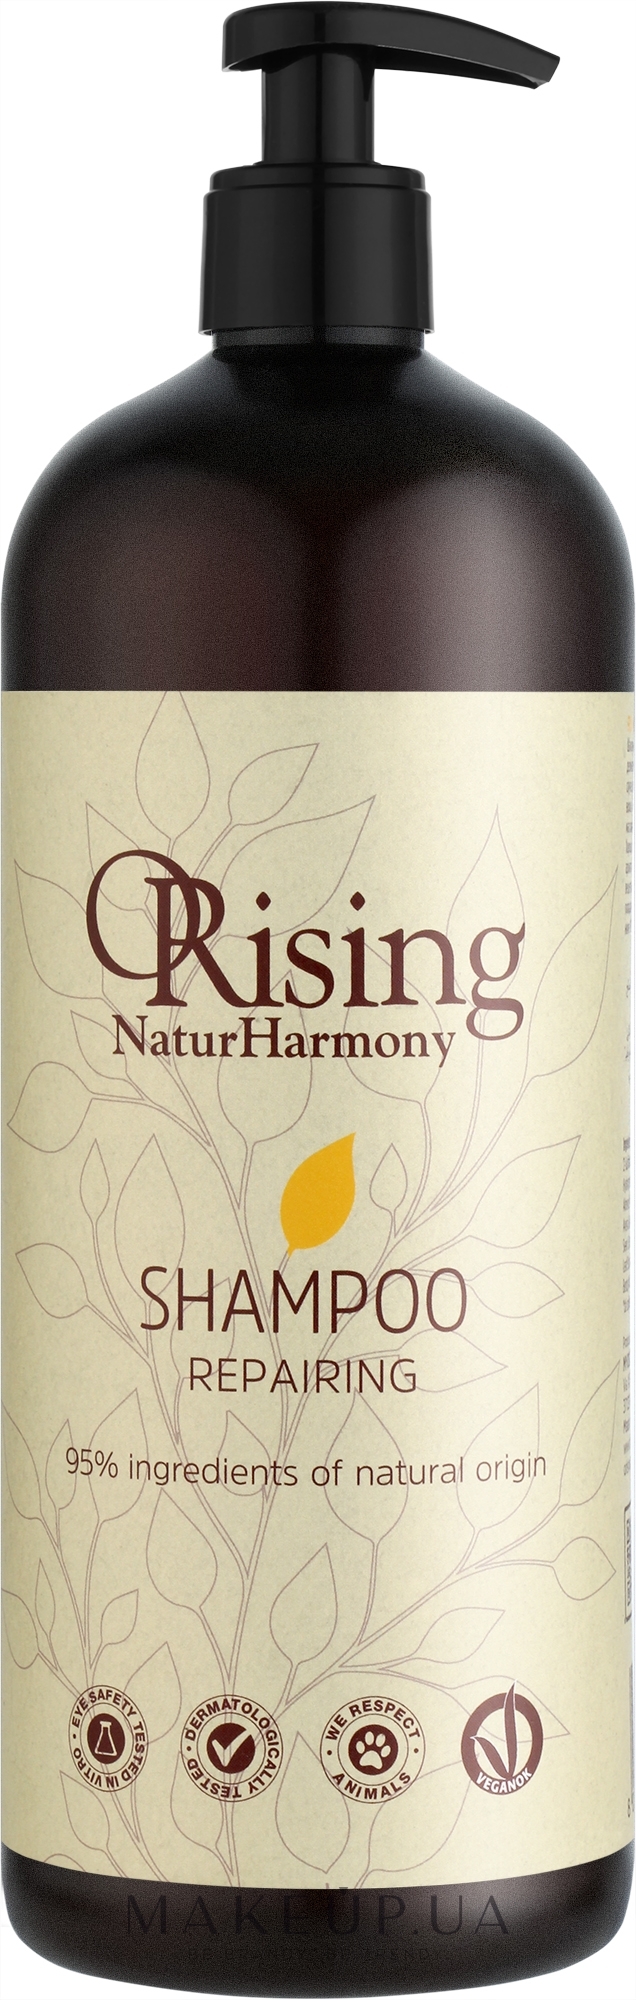 Шампунь для волос "Восстанавливающий" - Orising Natur Harmony Repairing Shampoo — фото 1000ml